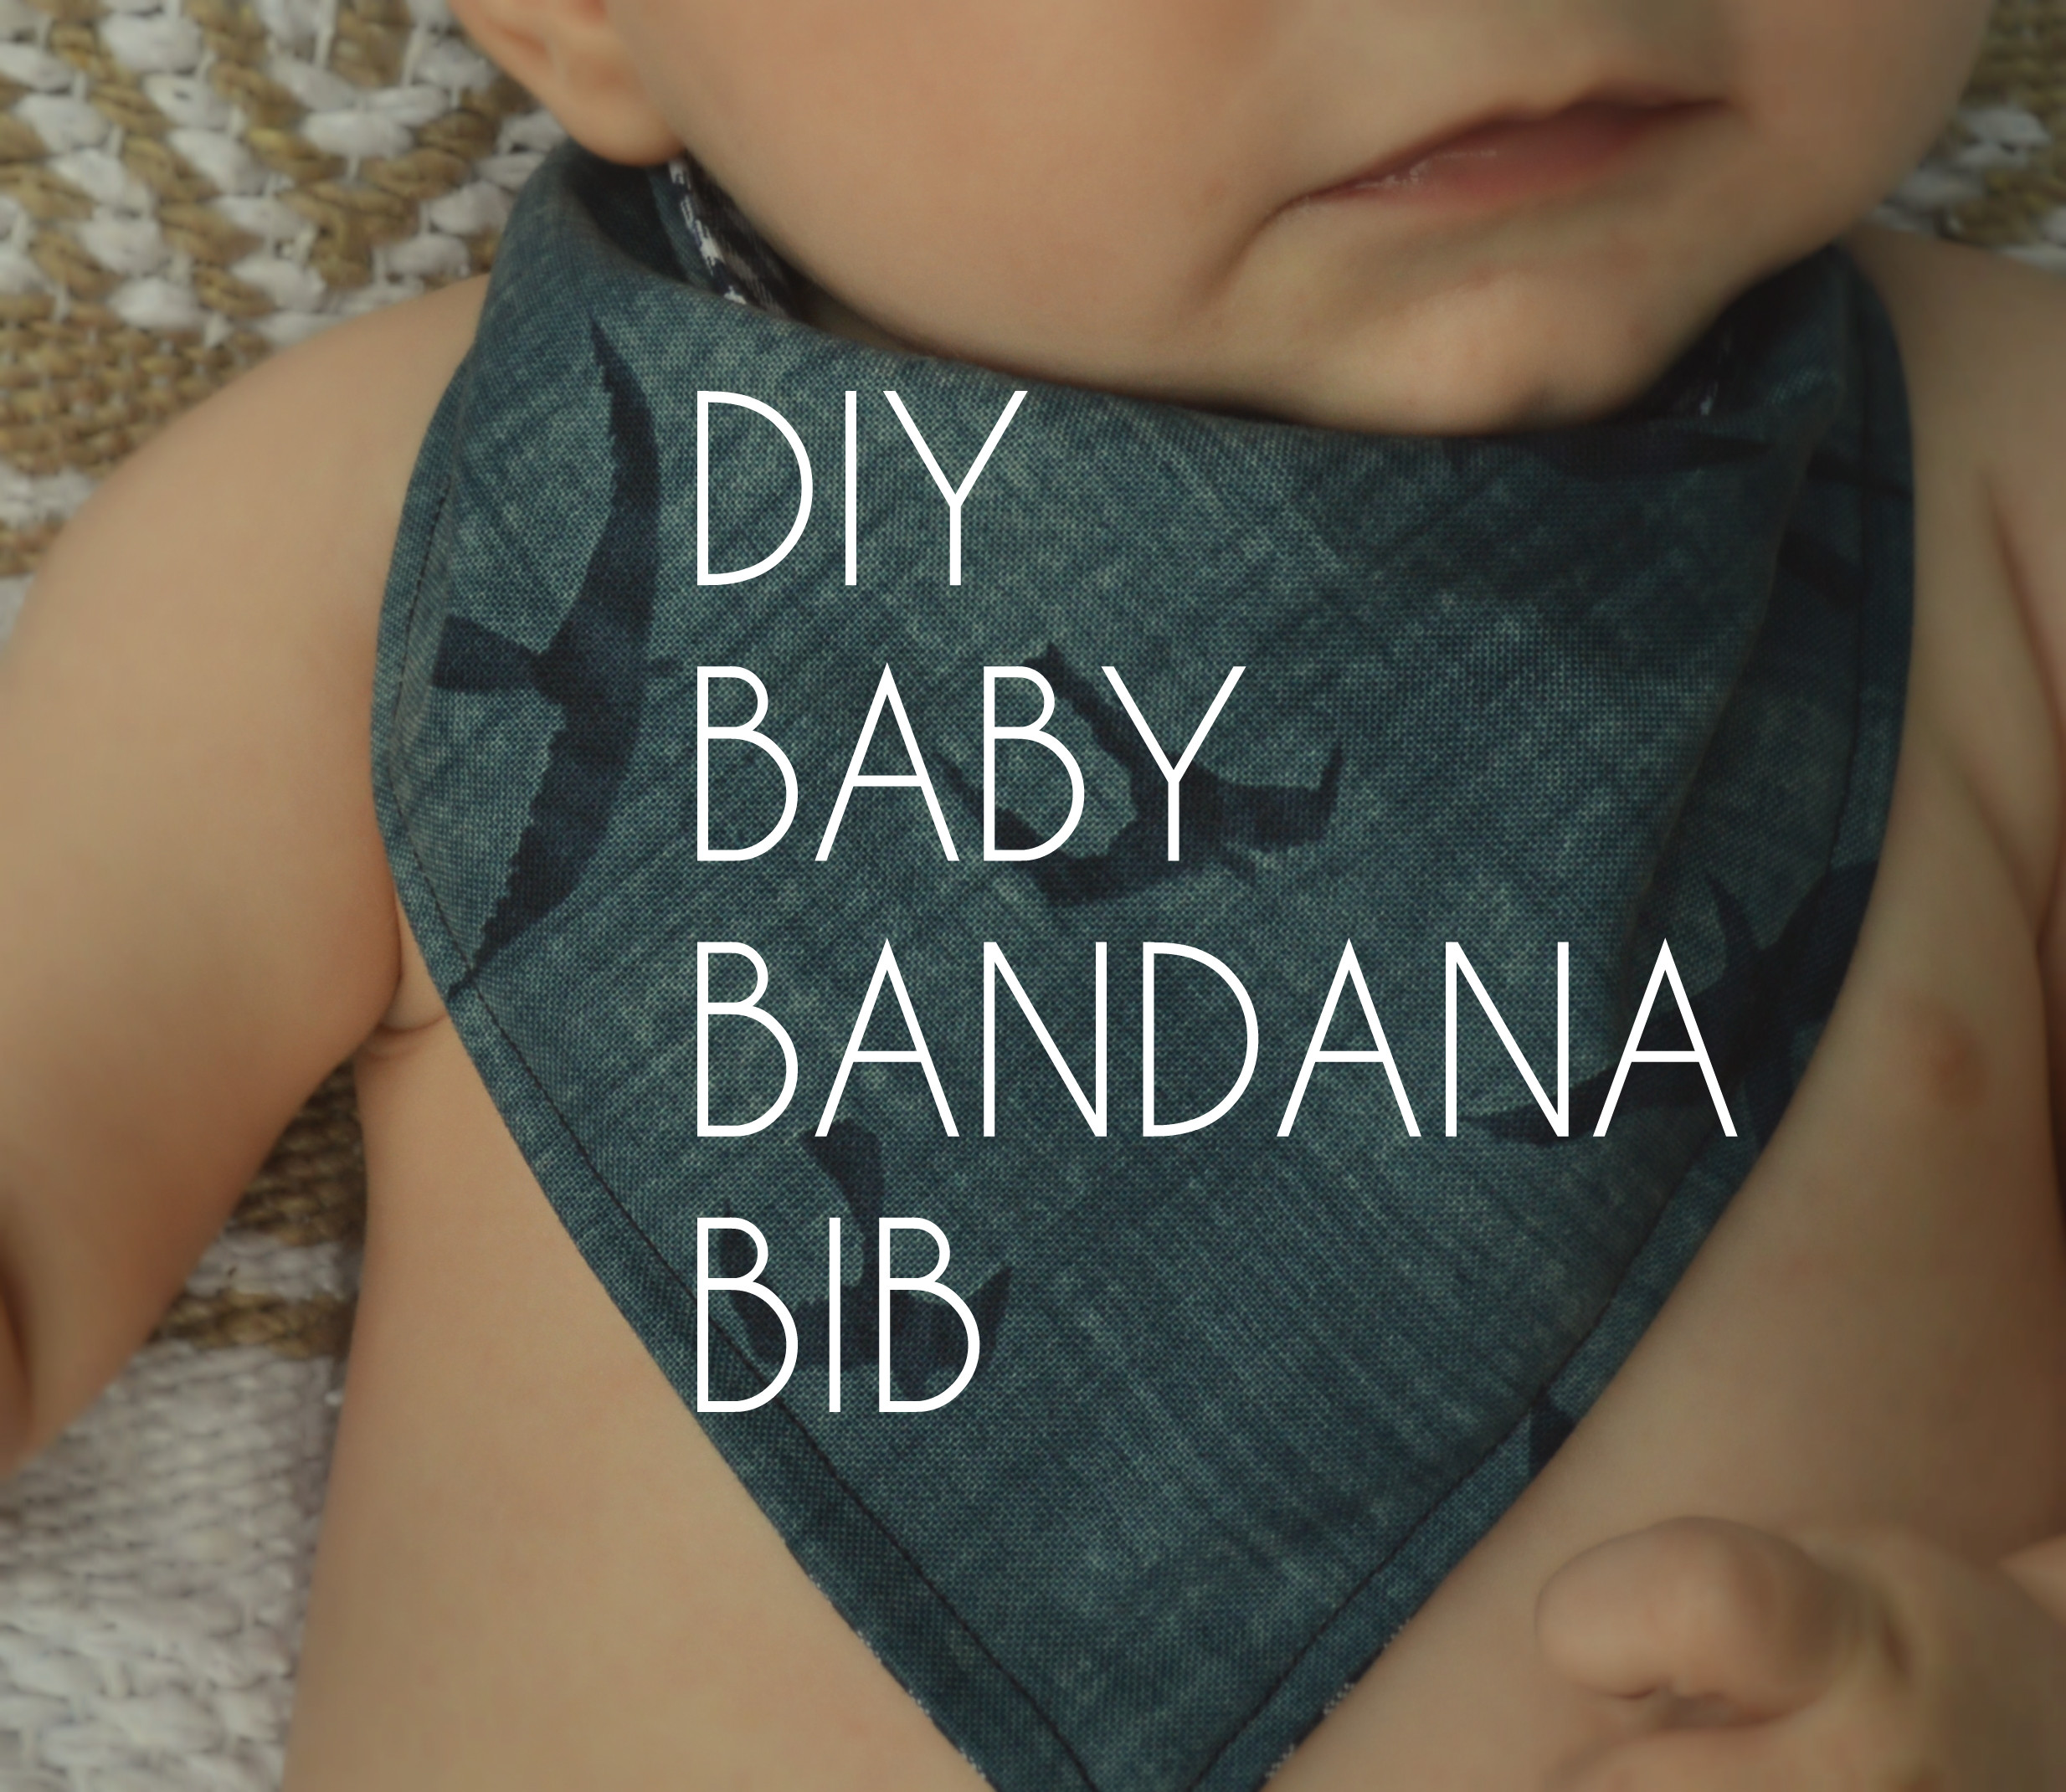 DIY Baby Bandana Bib
 DIY Baby Bandana Bibs